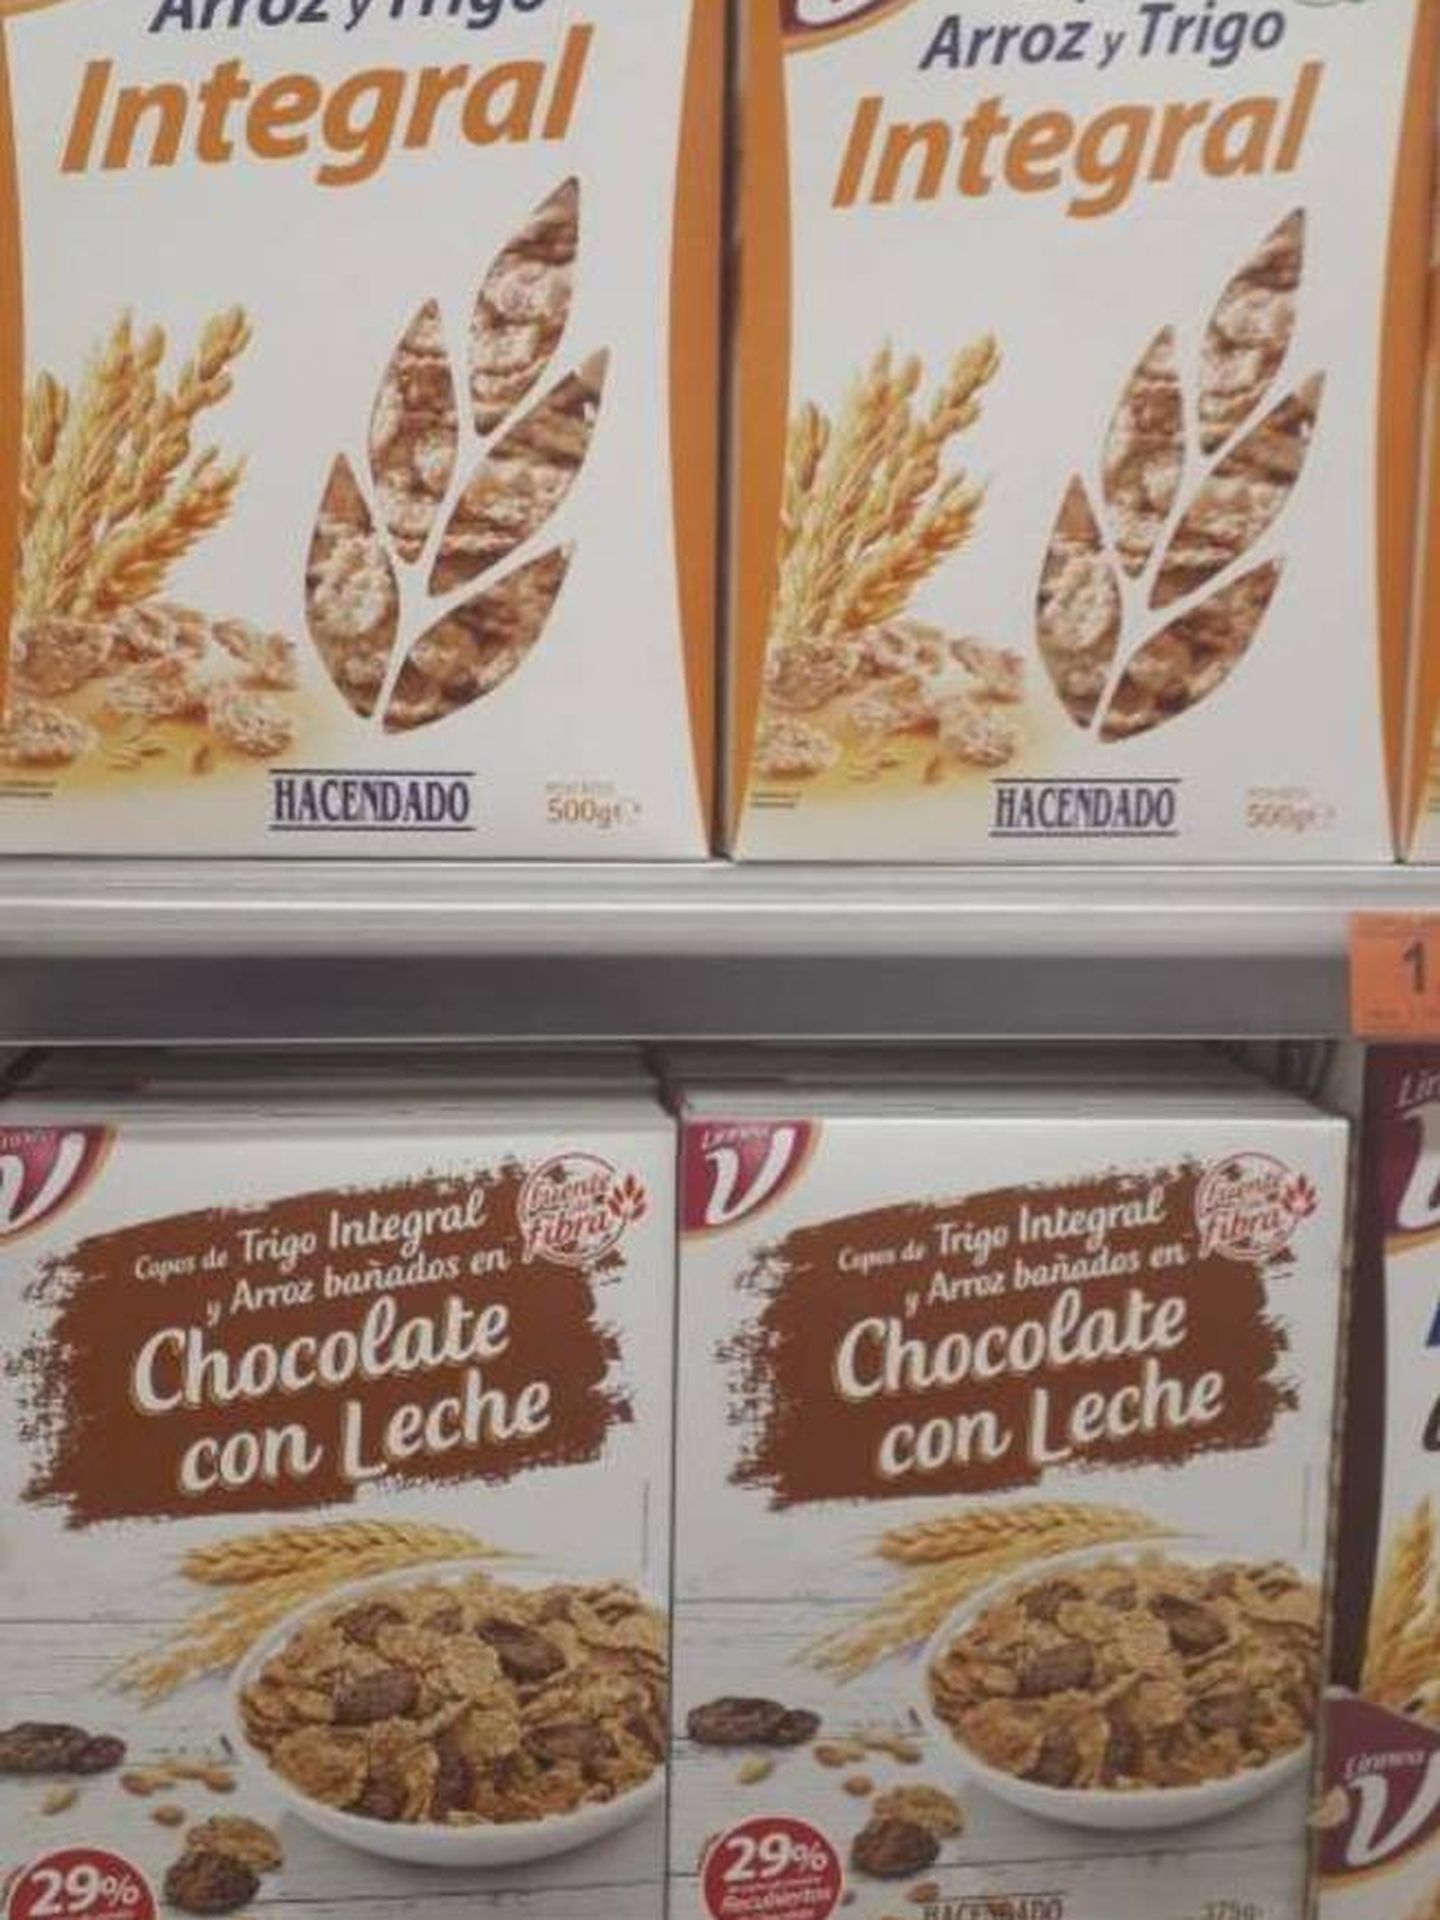 Los cereales integrales están fabricados por Siro y los de chocolate, por el francés Dalycer. (M. V.)